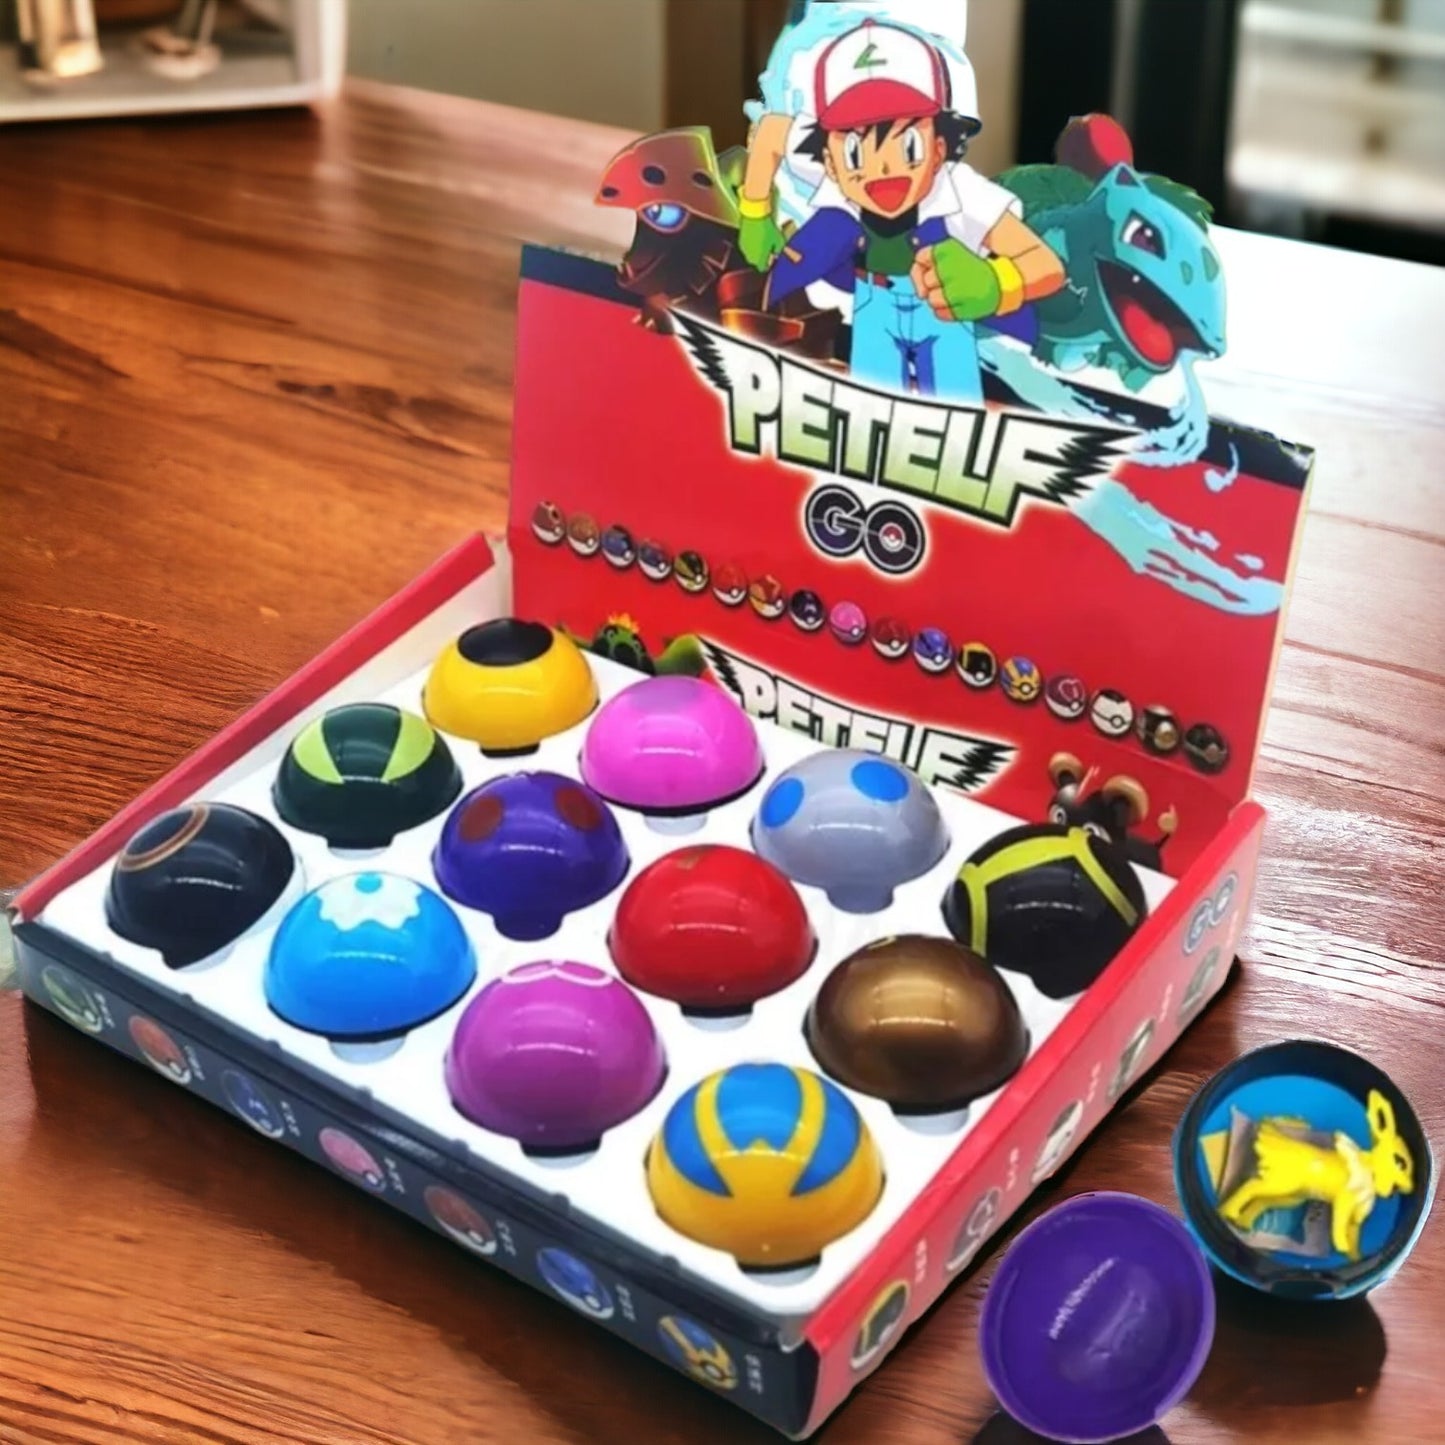 Lot x12 Pokéballs with Pokémon figurines